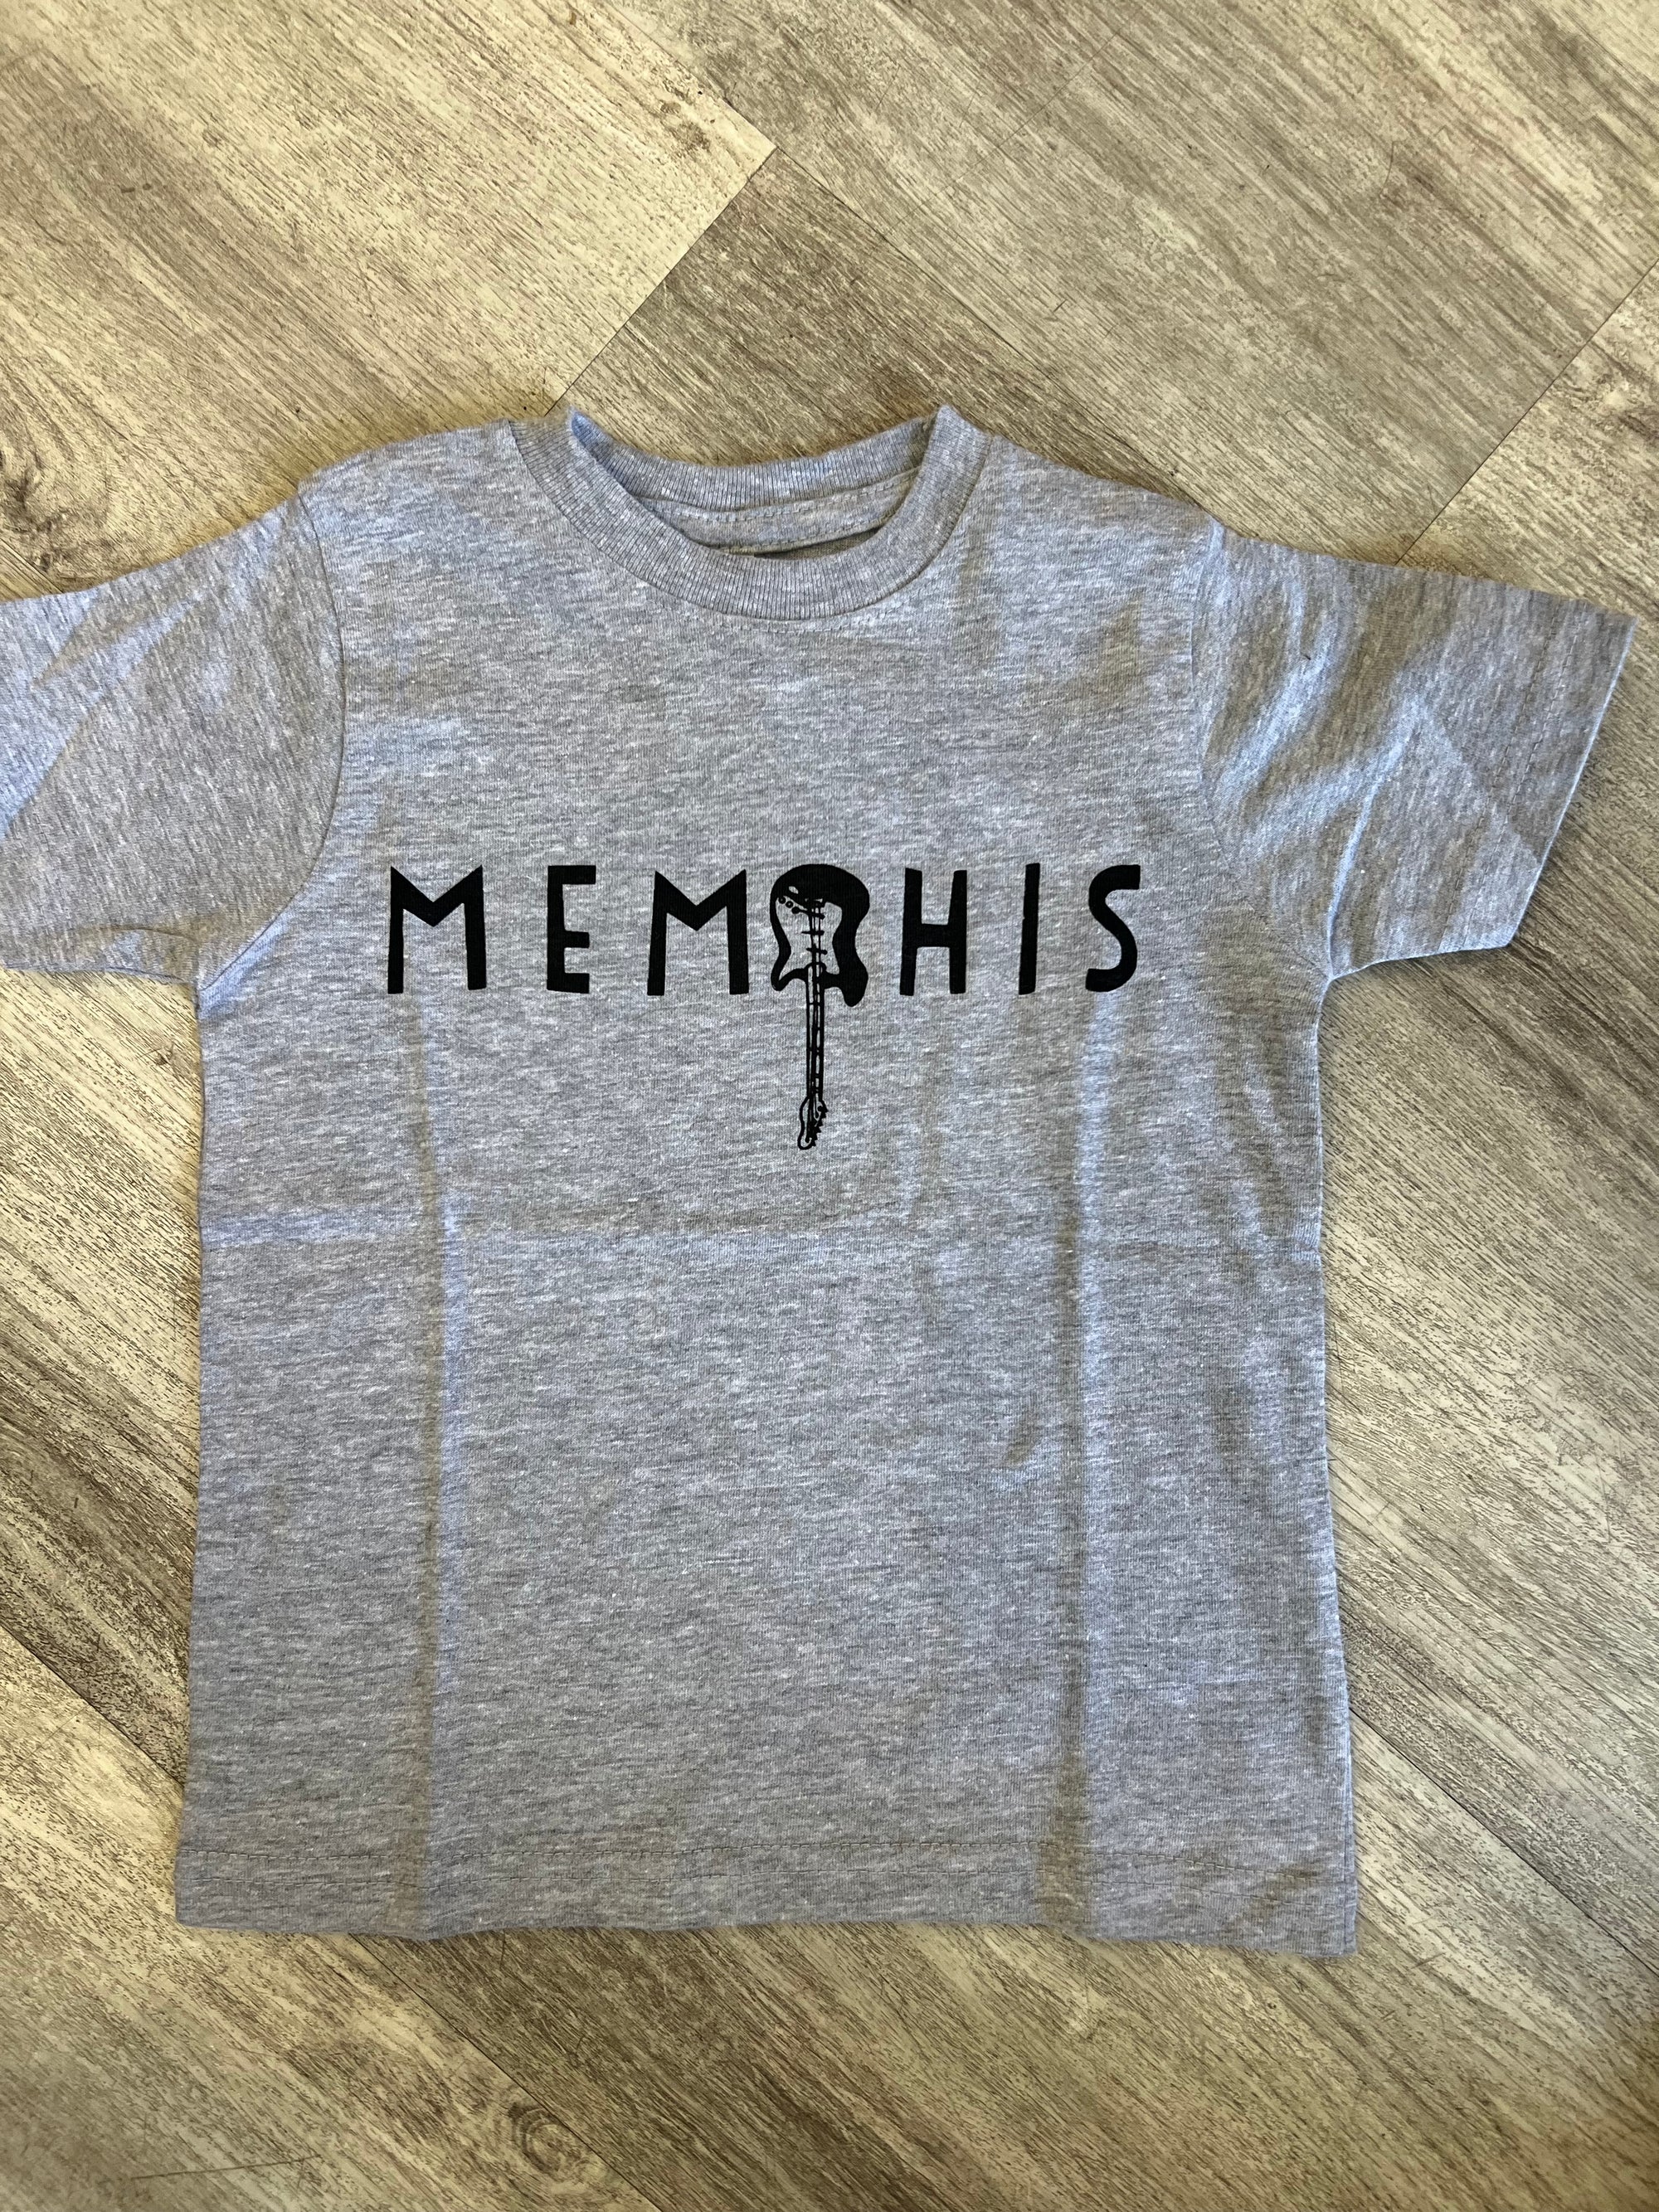 Children's T Shirt Memphis (Guitar) Toddler Size - Heather Gray